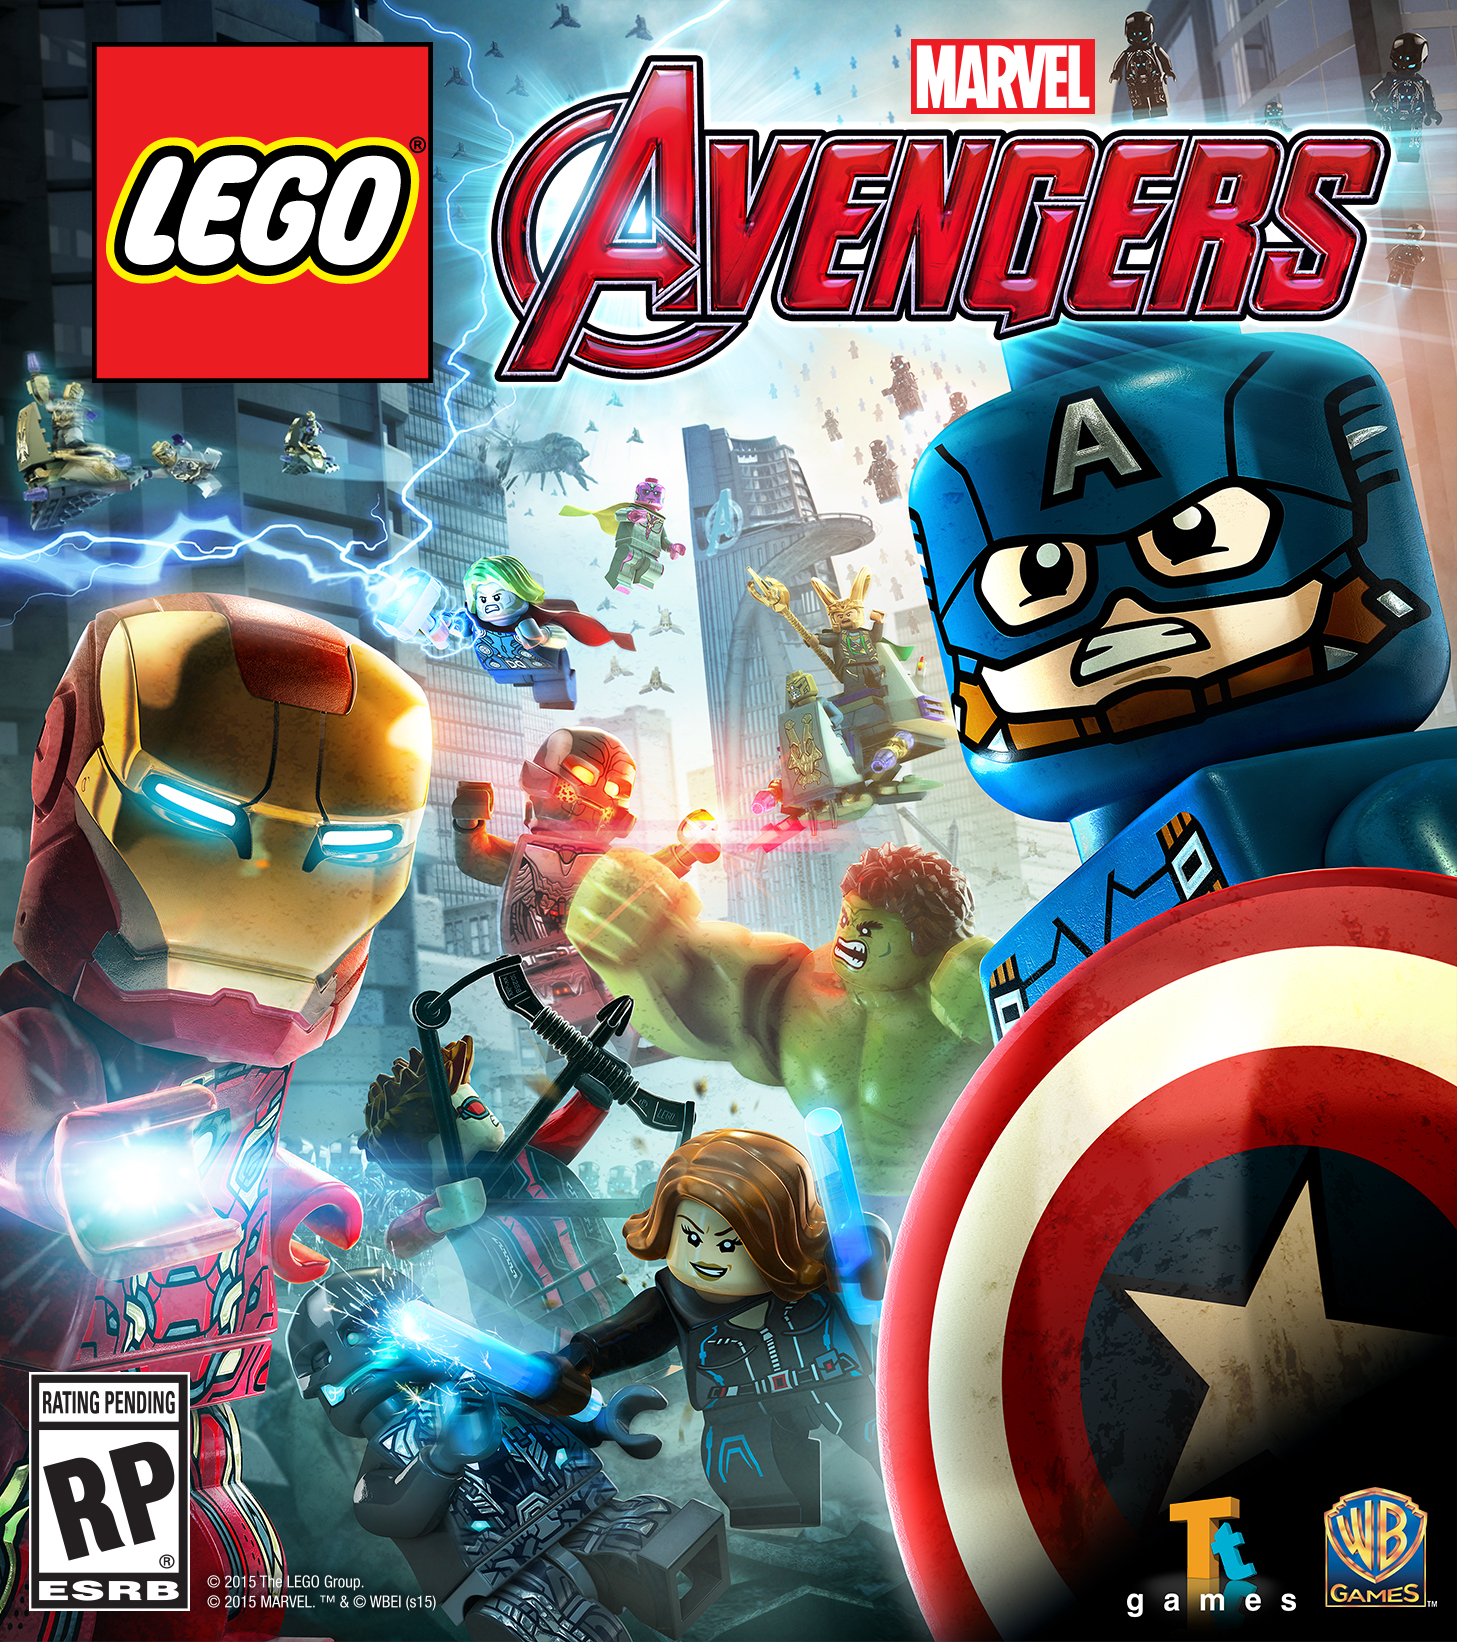 LEGO Marvel's Avengers (PS4): Marvel - Tokyo Otaku Mode (TOM)